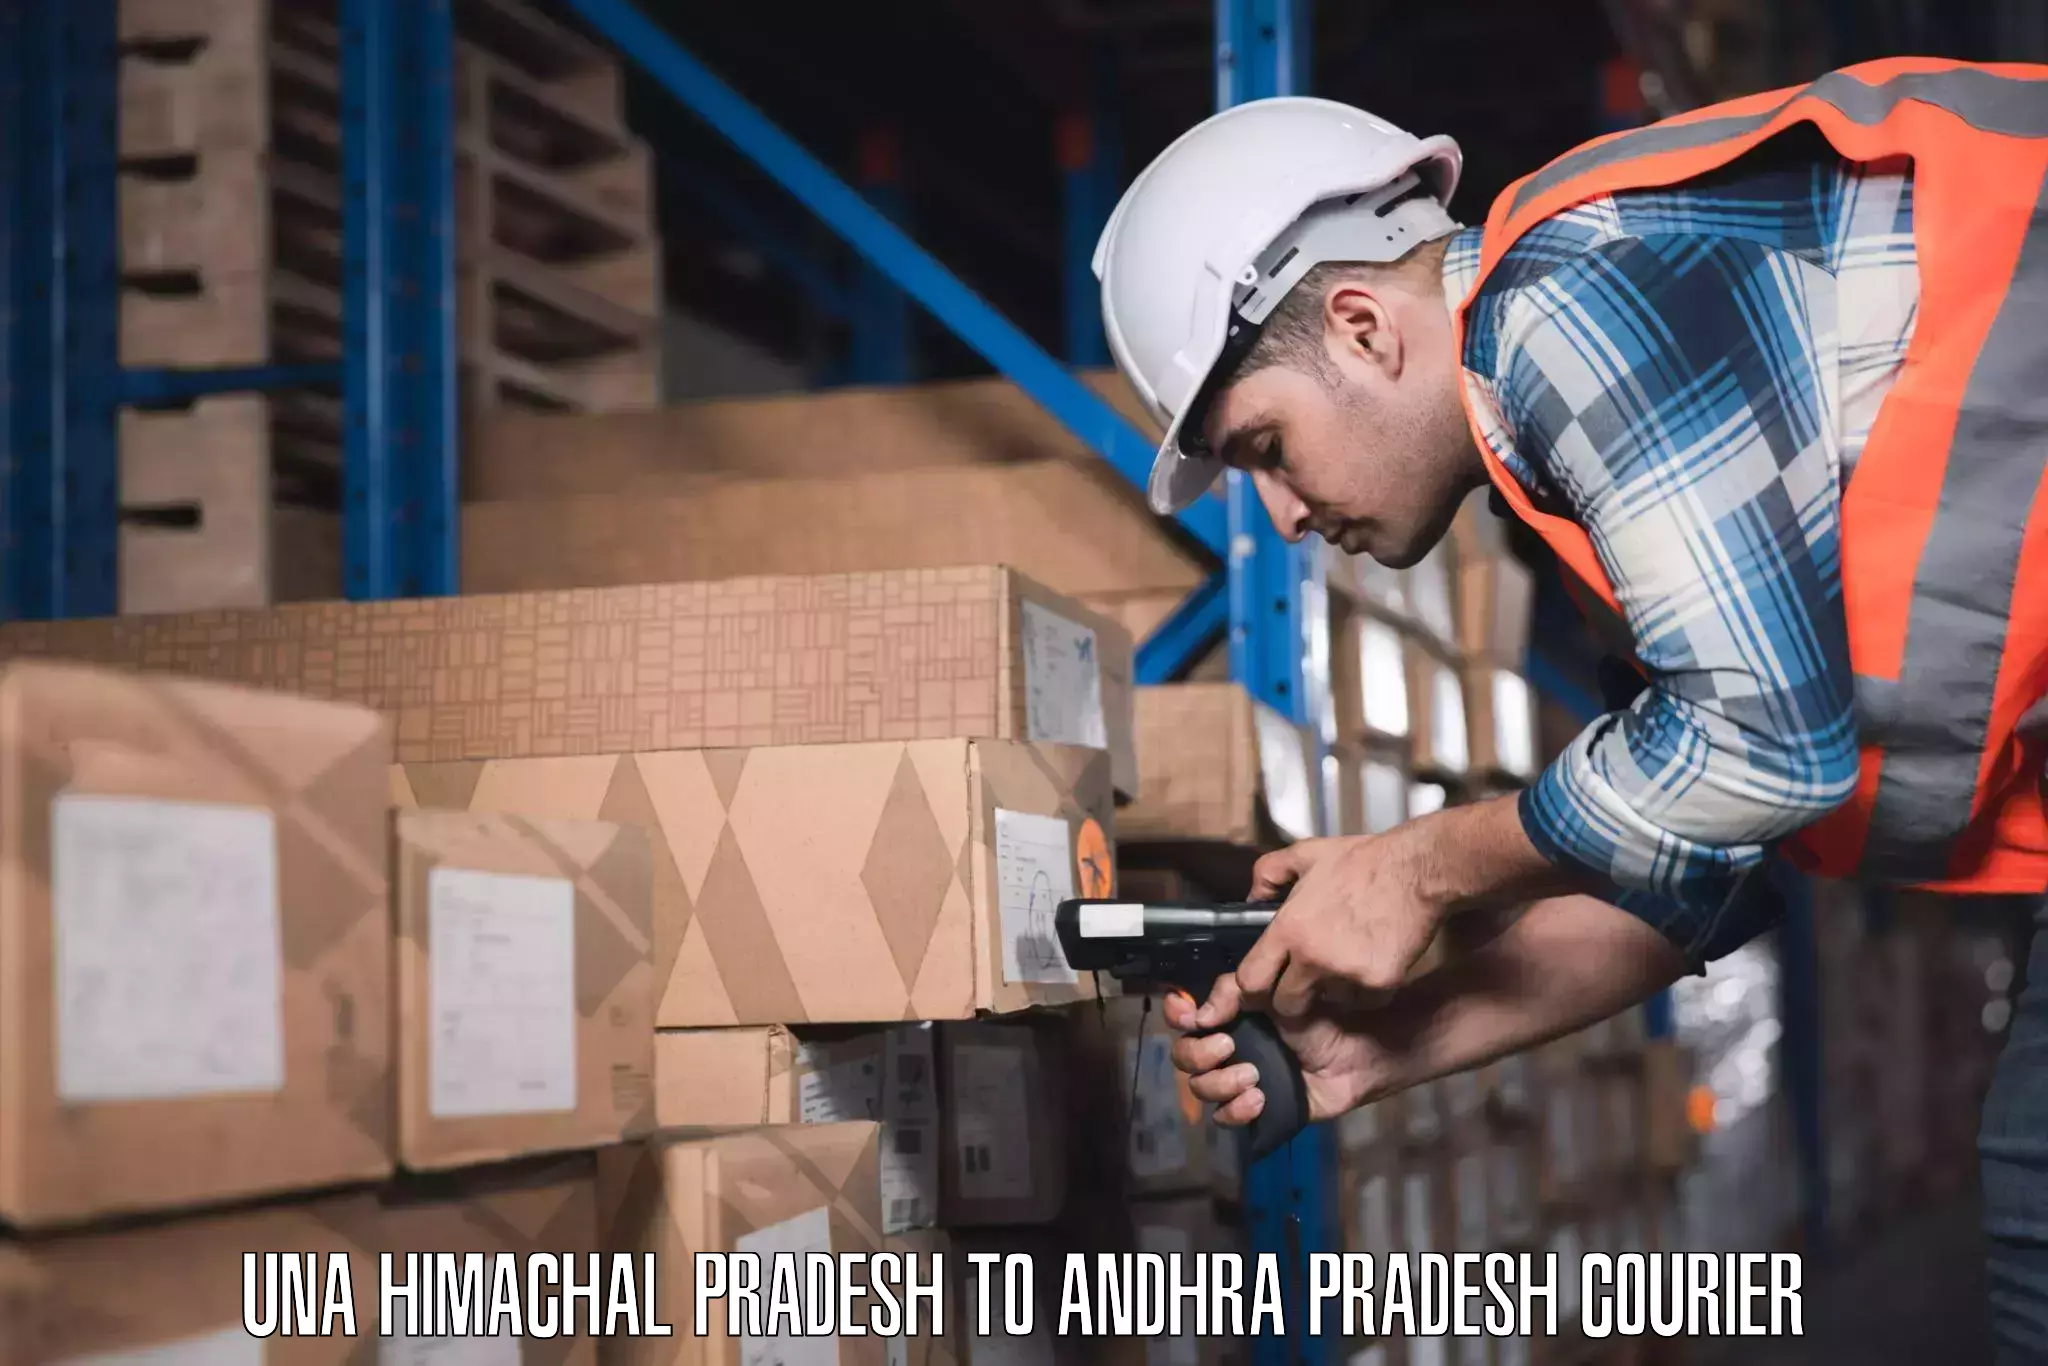 Digital baggage courier Una Himachal Pradesh to Andhra Pradesh